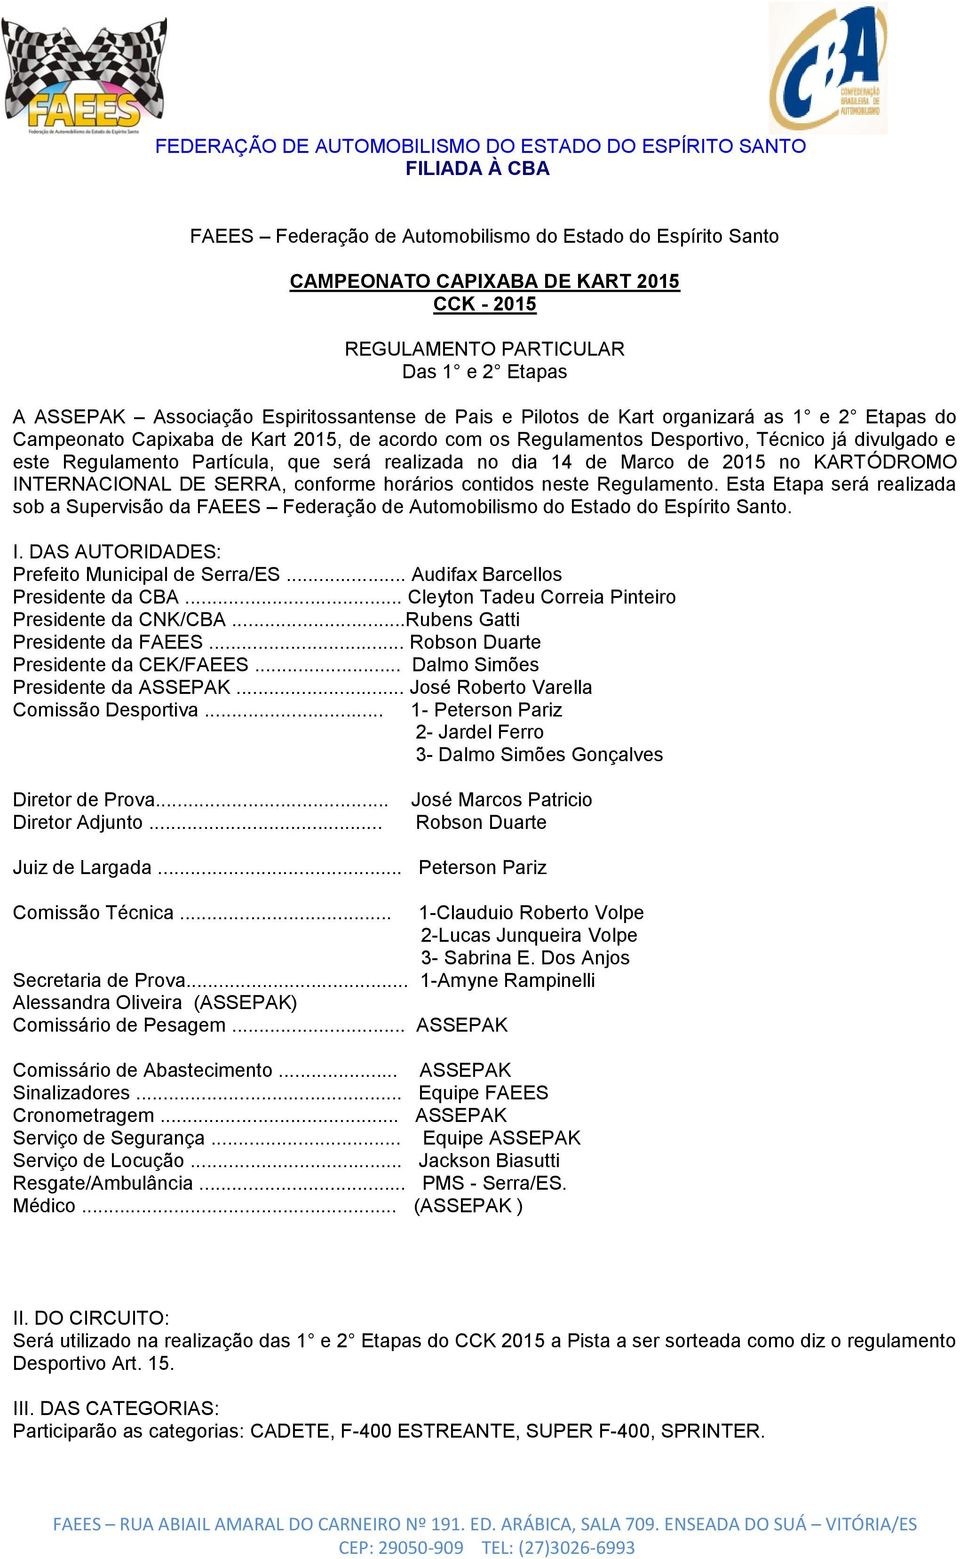 14 de Marco de 2015 no KARTÓDROMO INTERNACIONAL DE SERRA, conforme horários contidos neste Regulamento.